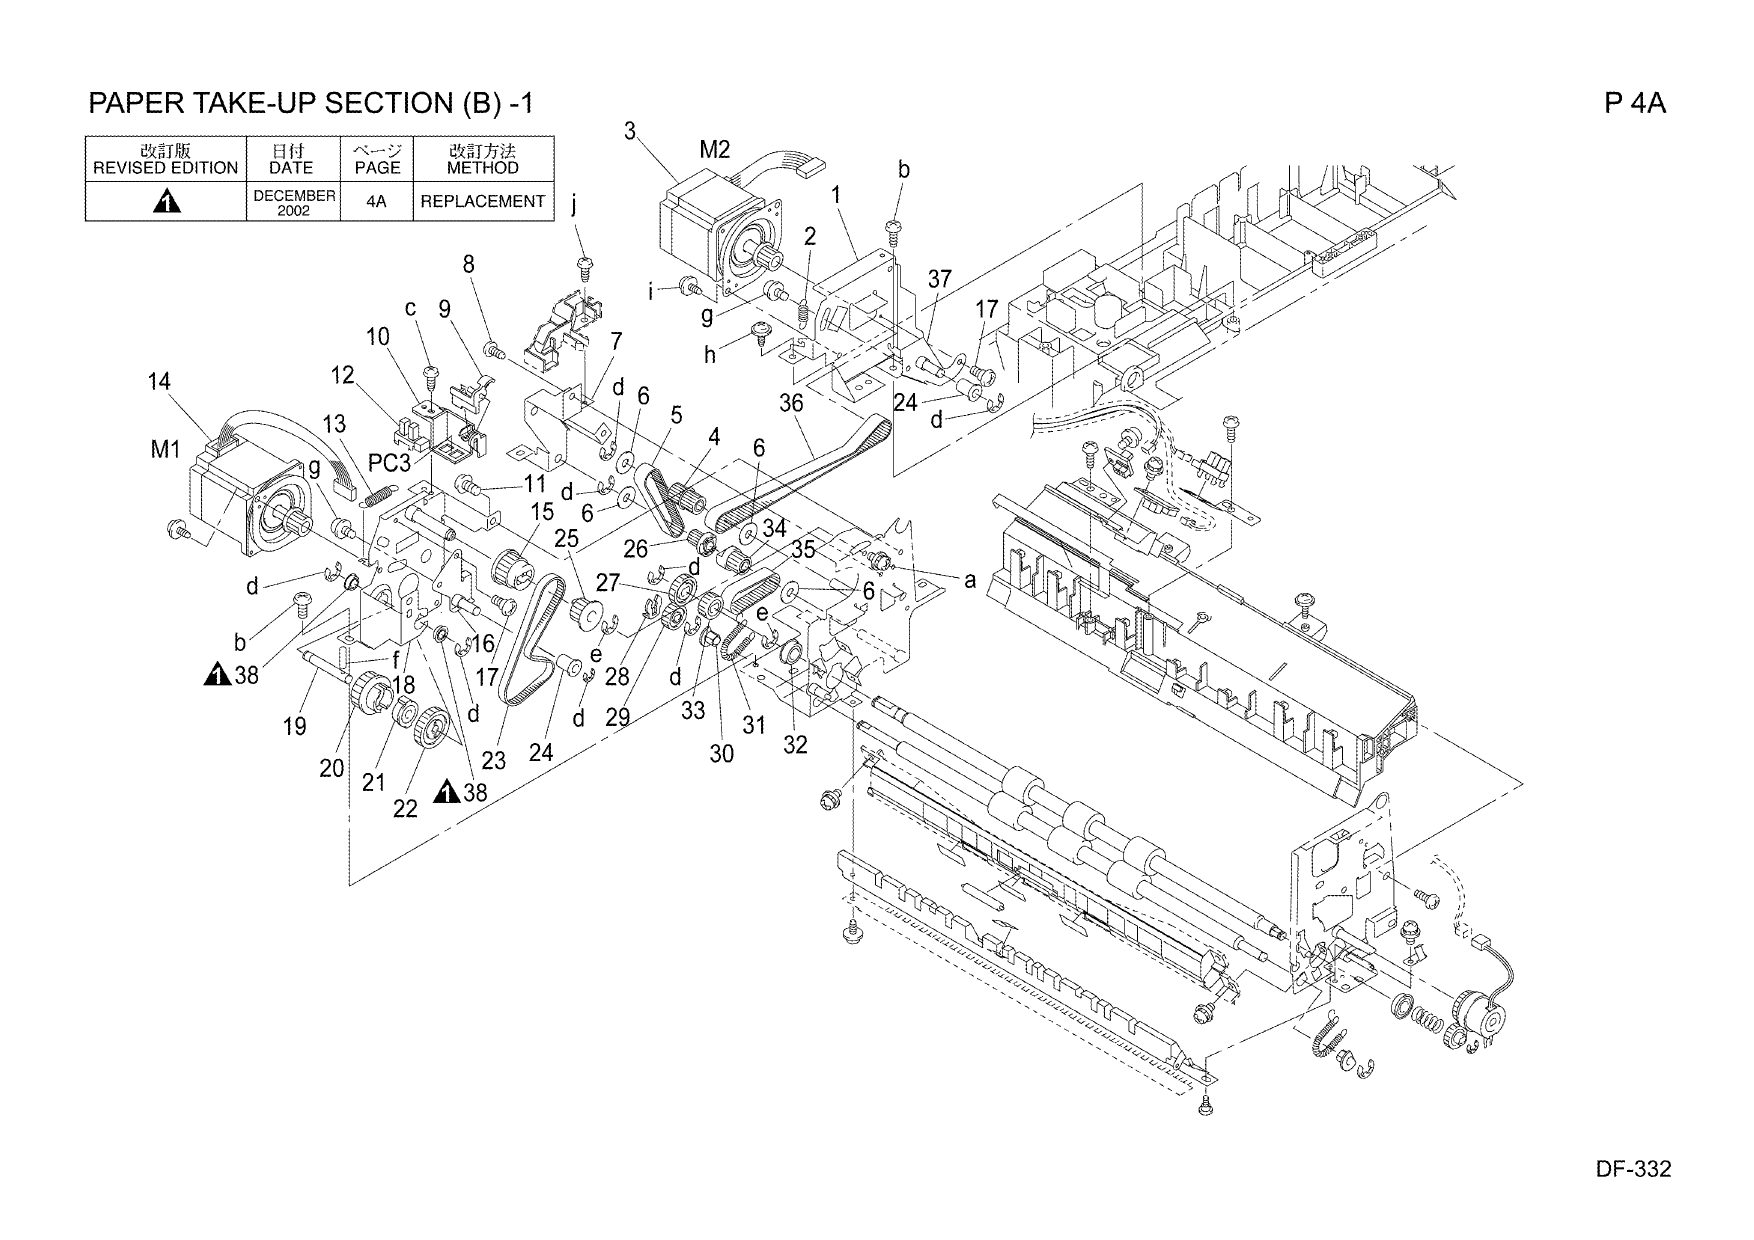 Konica-Minolta Options DF-332 Parts Manual-2